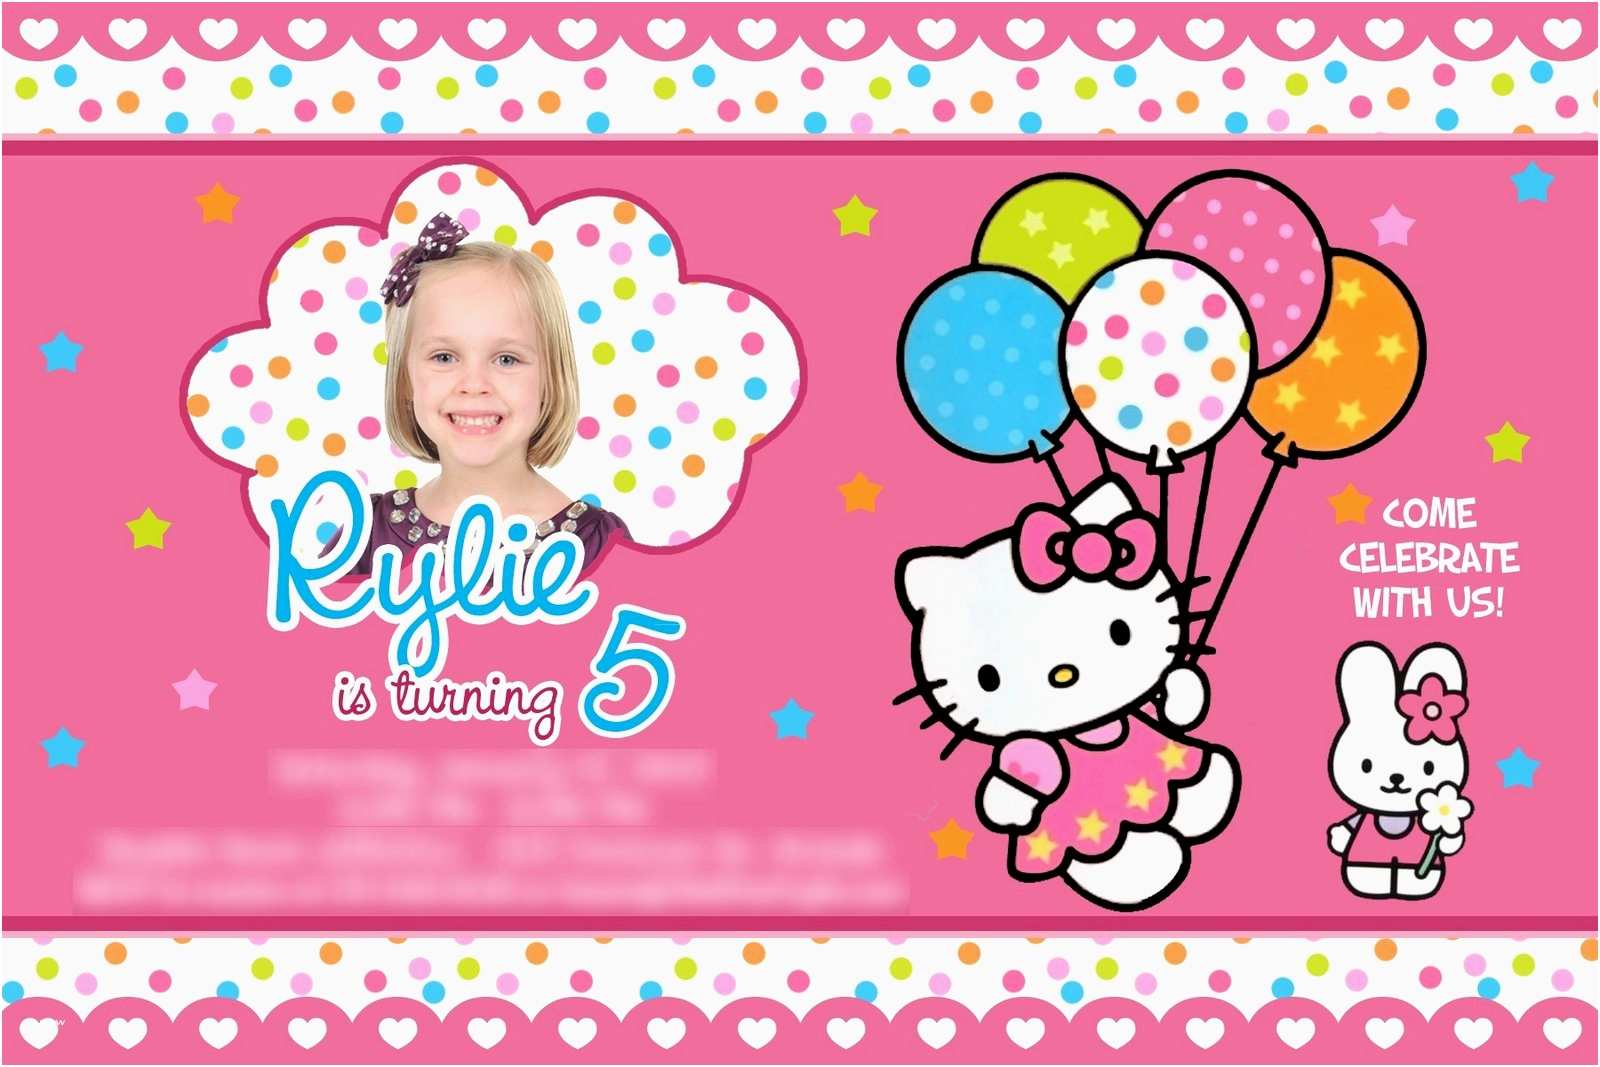 Happy Birthday Image Hello Kitty New Hello Kitty Birthday Wallpaper